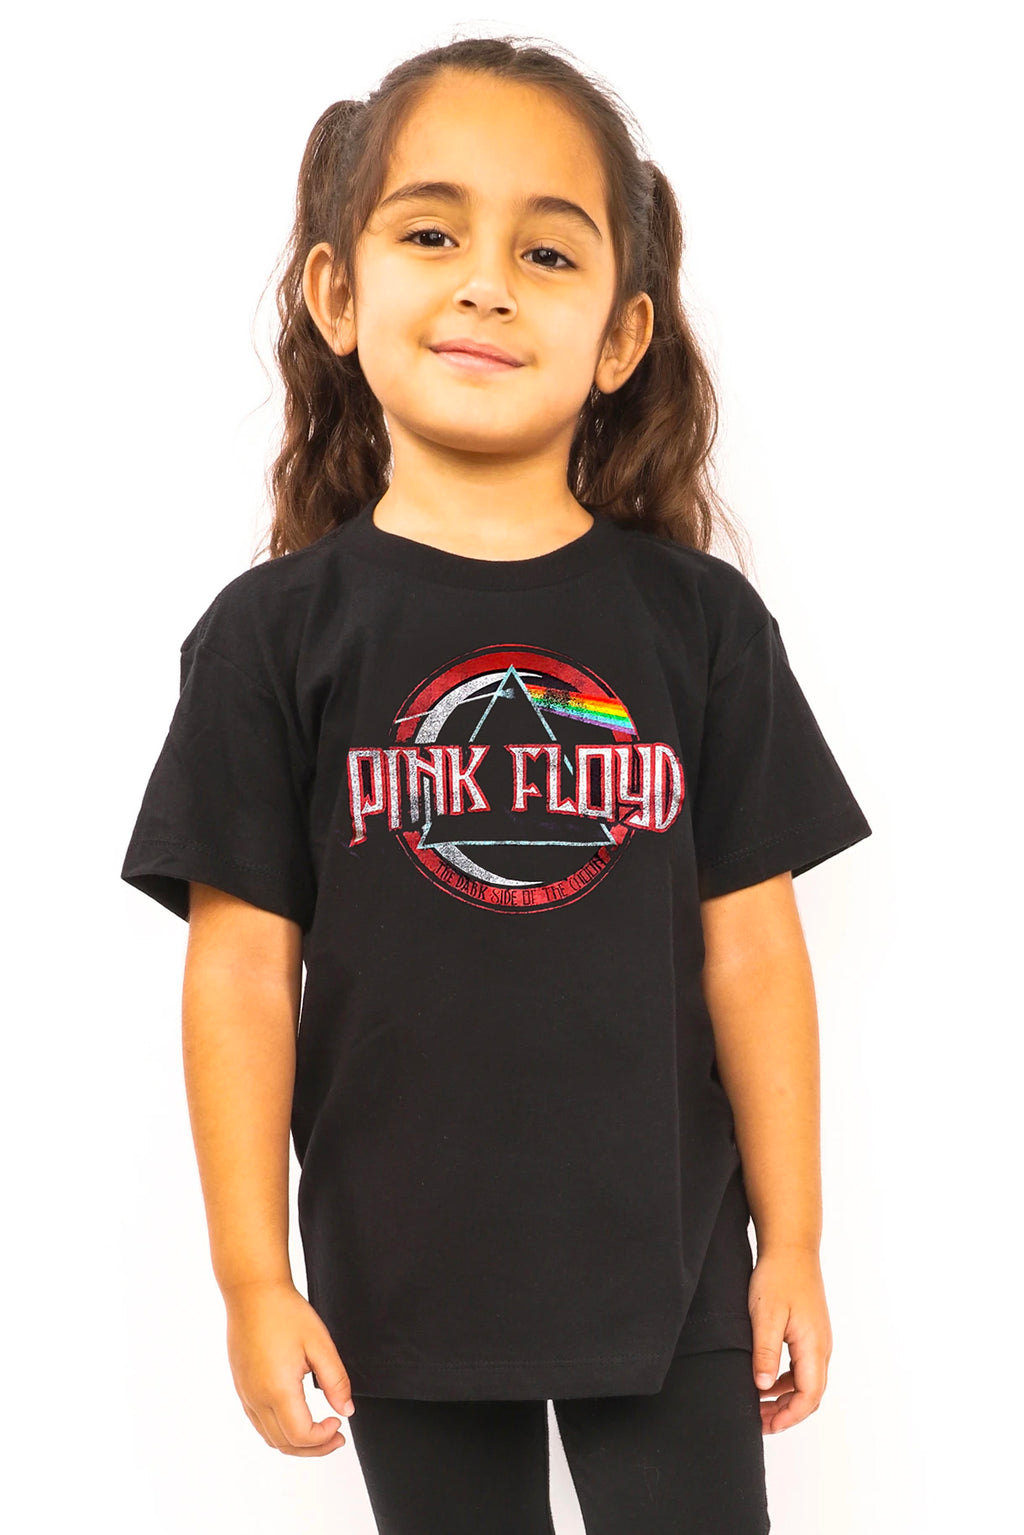 Pink Floyd vintage dark side of the moon seal kid's t-shirt.